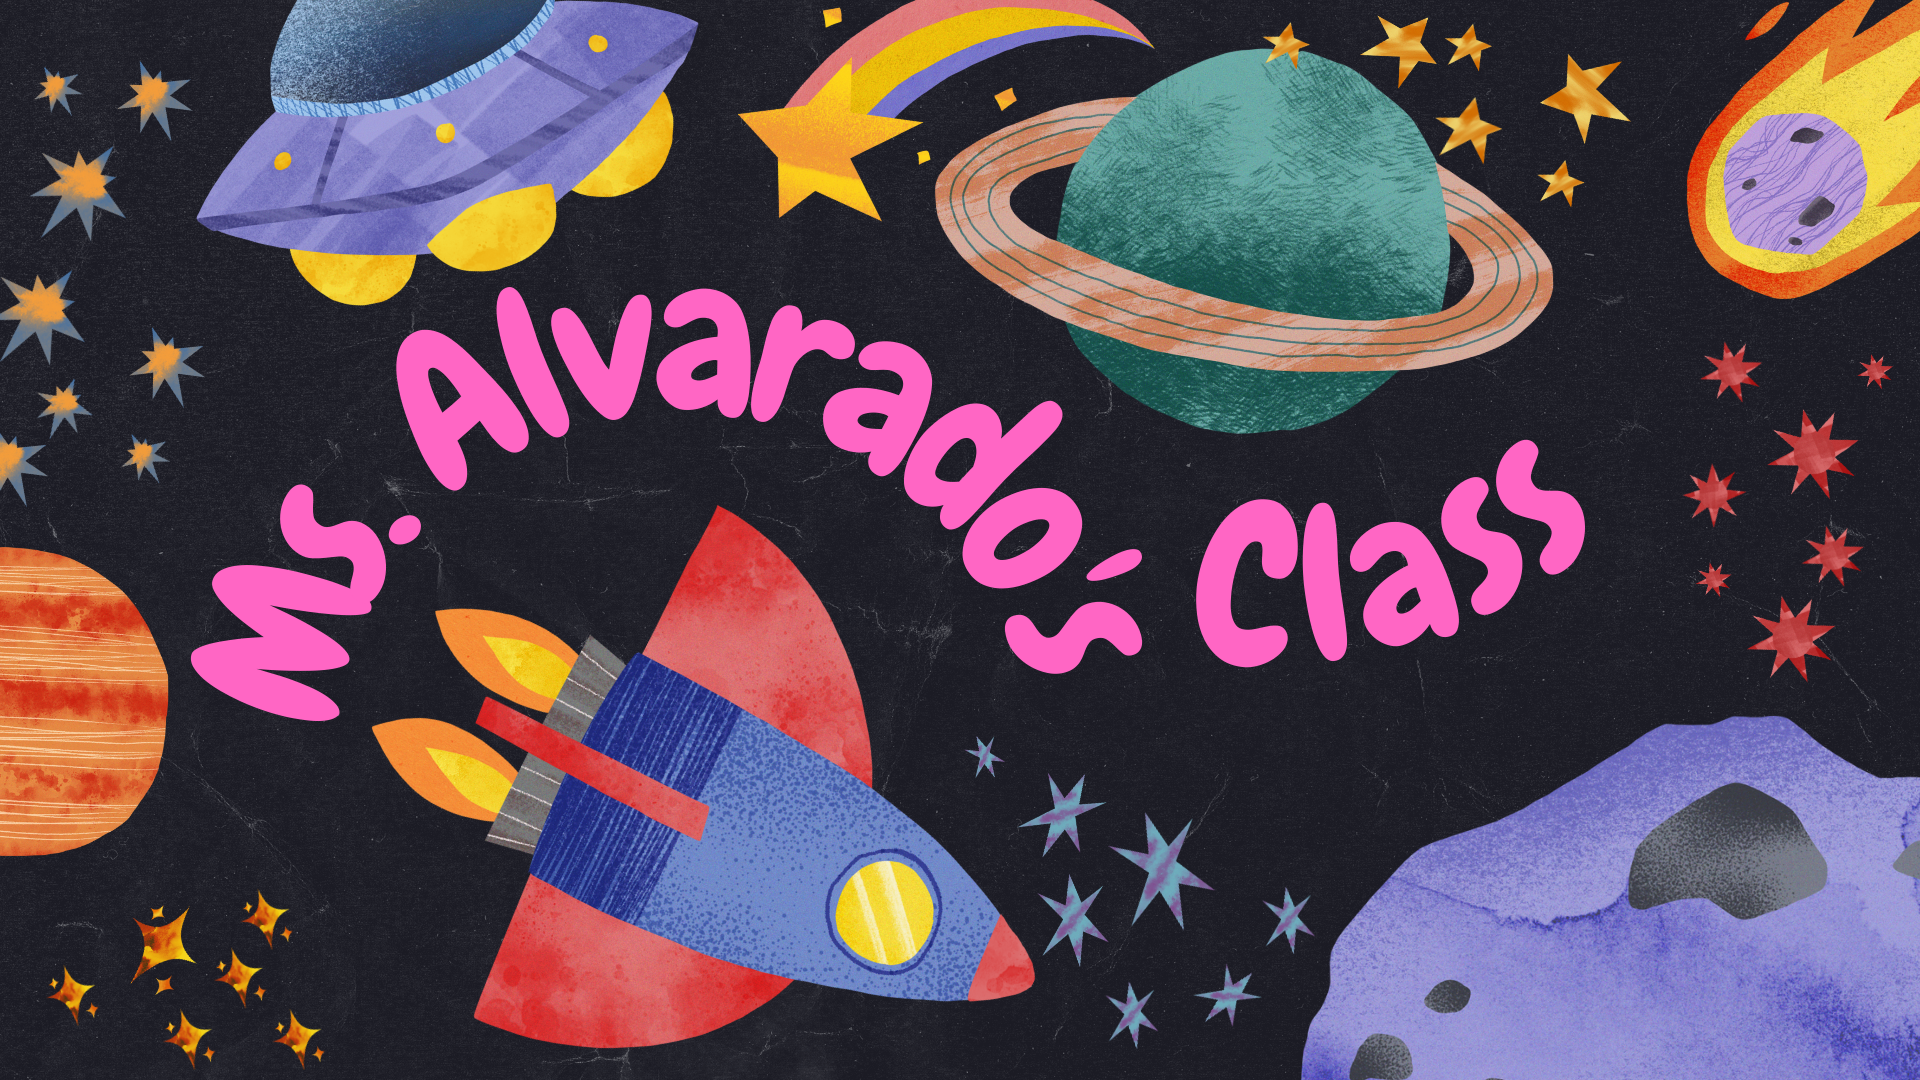 Alvarado Class